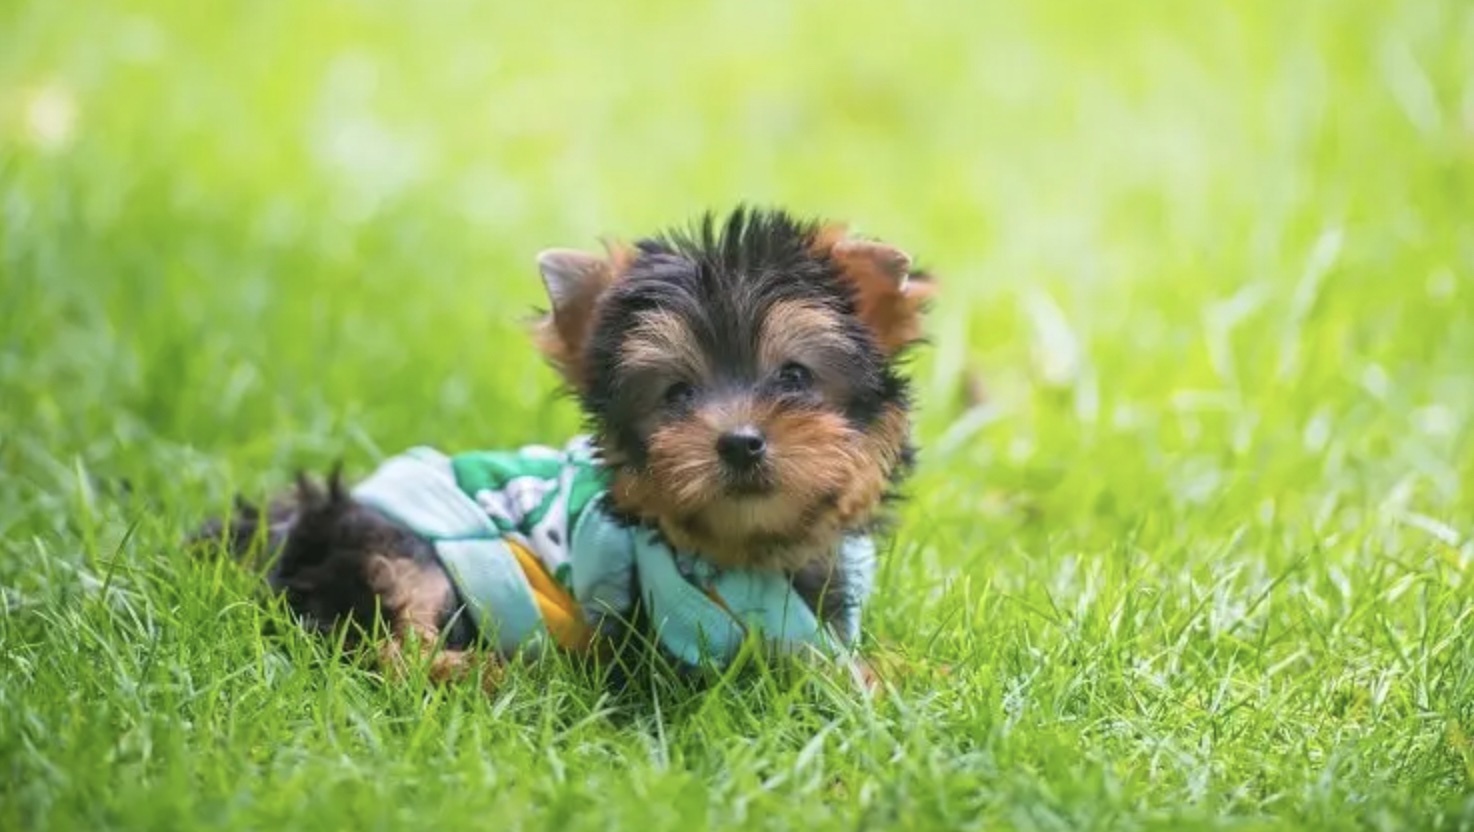 một chú chó teacup yorkie tai vểnh lông xoăn dày ngồi giữa bãi cỏ